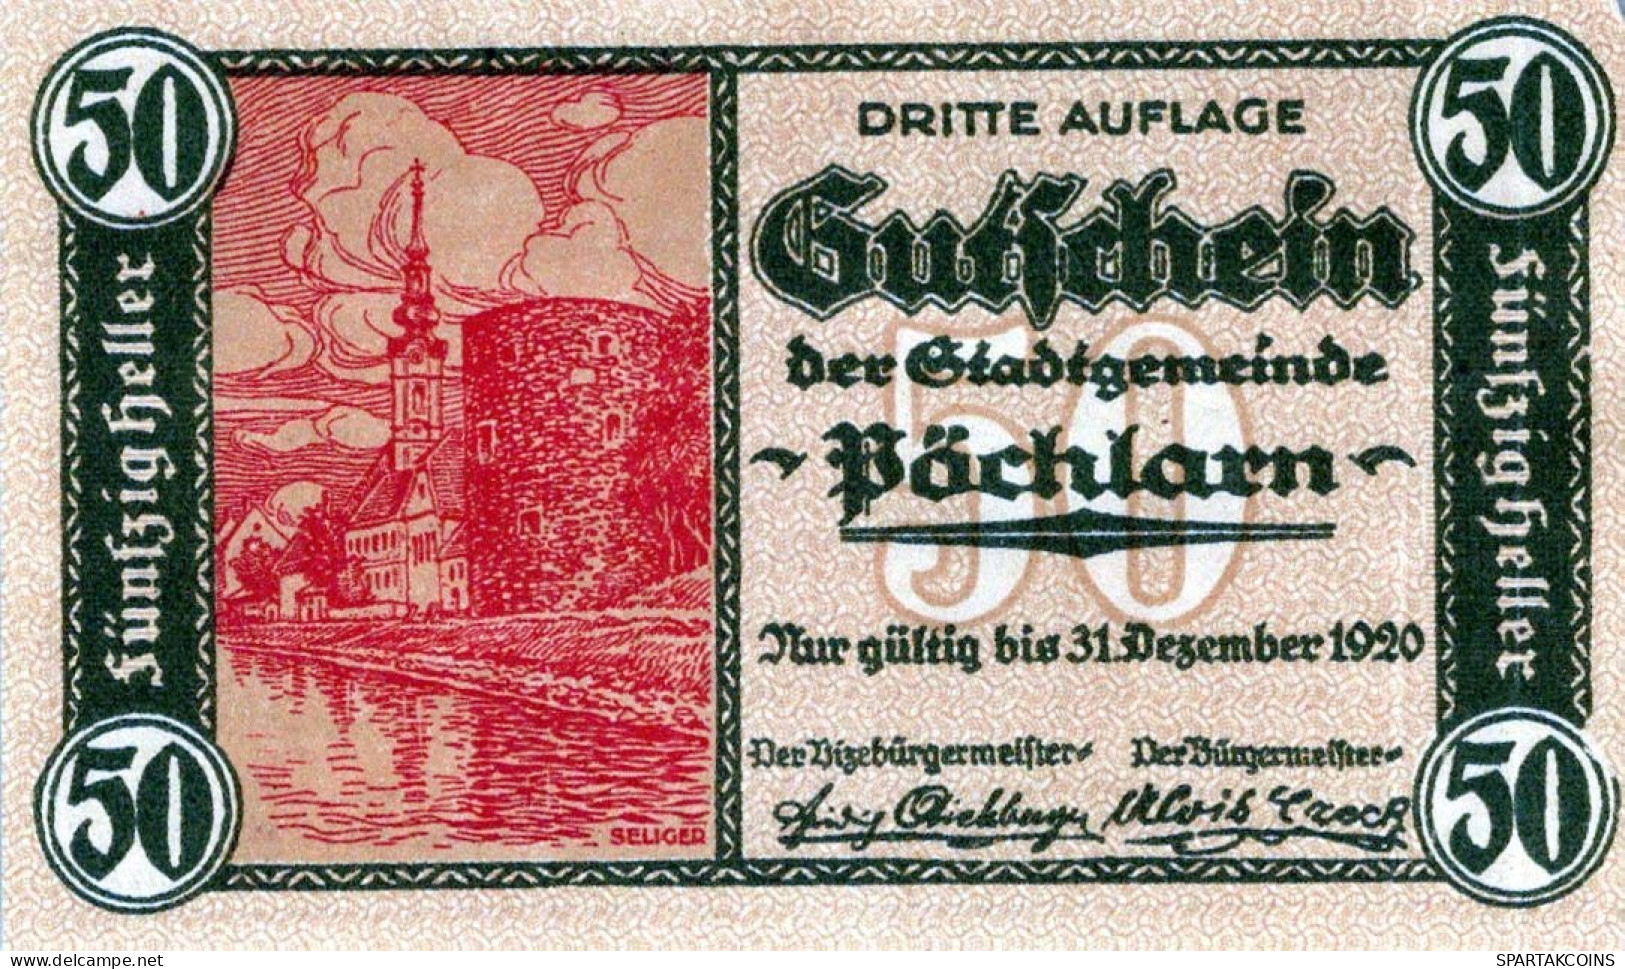 50 HELLER 1920 Stadt PoCHLARN Niedrigeren Österreich Notgeld Banknote #PI305 - [11] Emissions Locales